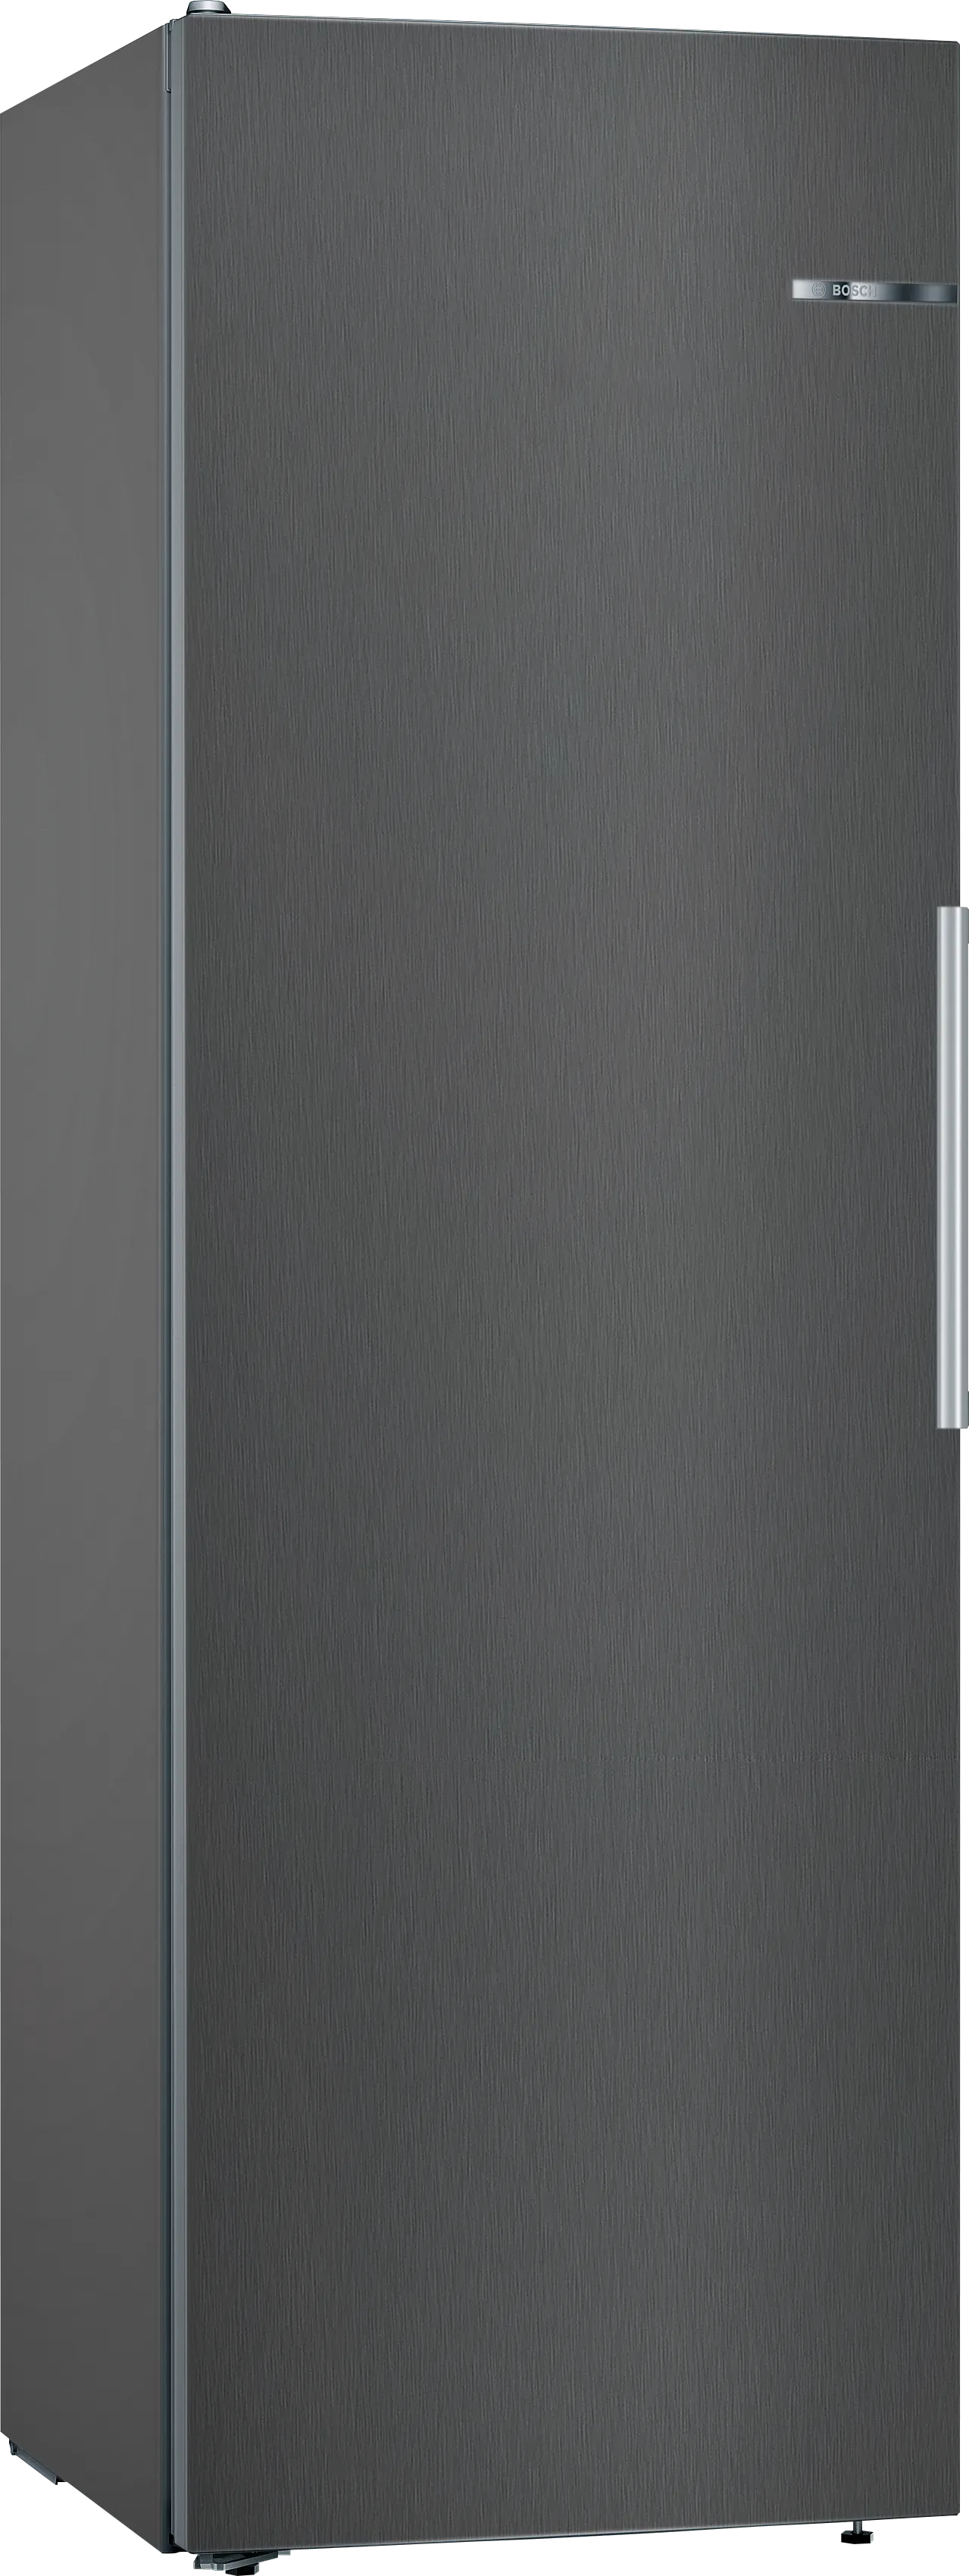 Serie 4 Jääkaappi 186 x 60 cm Musta teräs 